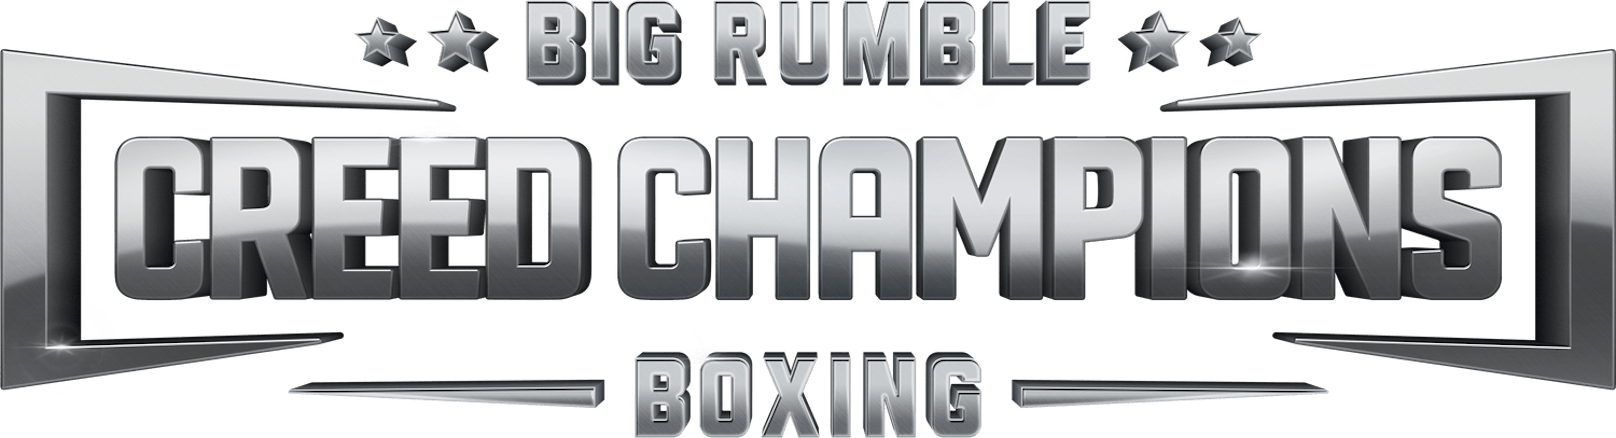 Koch Media, Survios und MGM geben Partnerschaft für Big Rumble Boxing: Creed Champions bekannt.